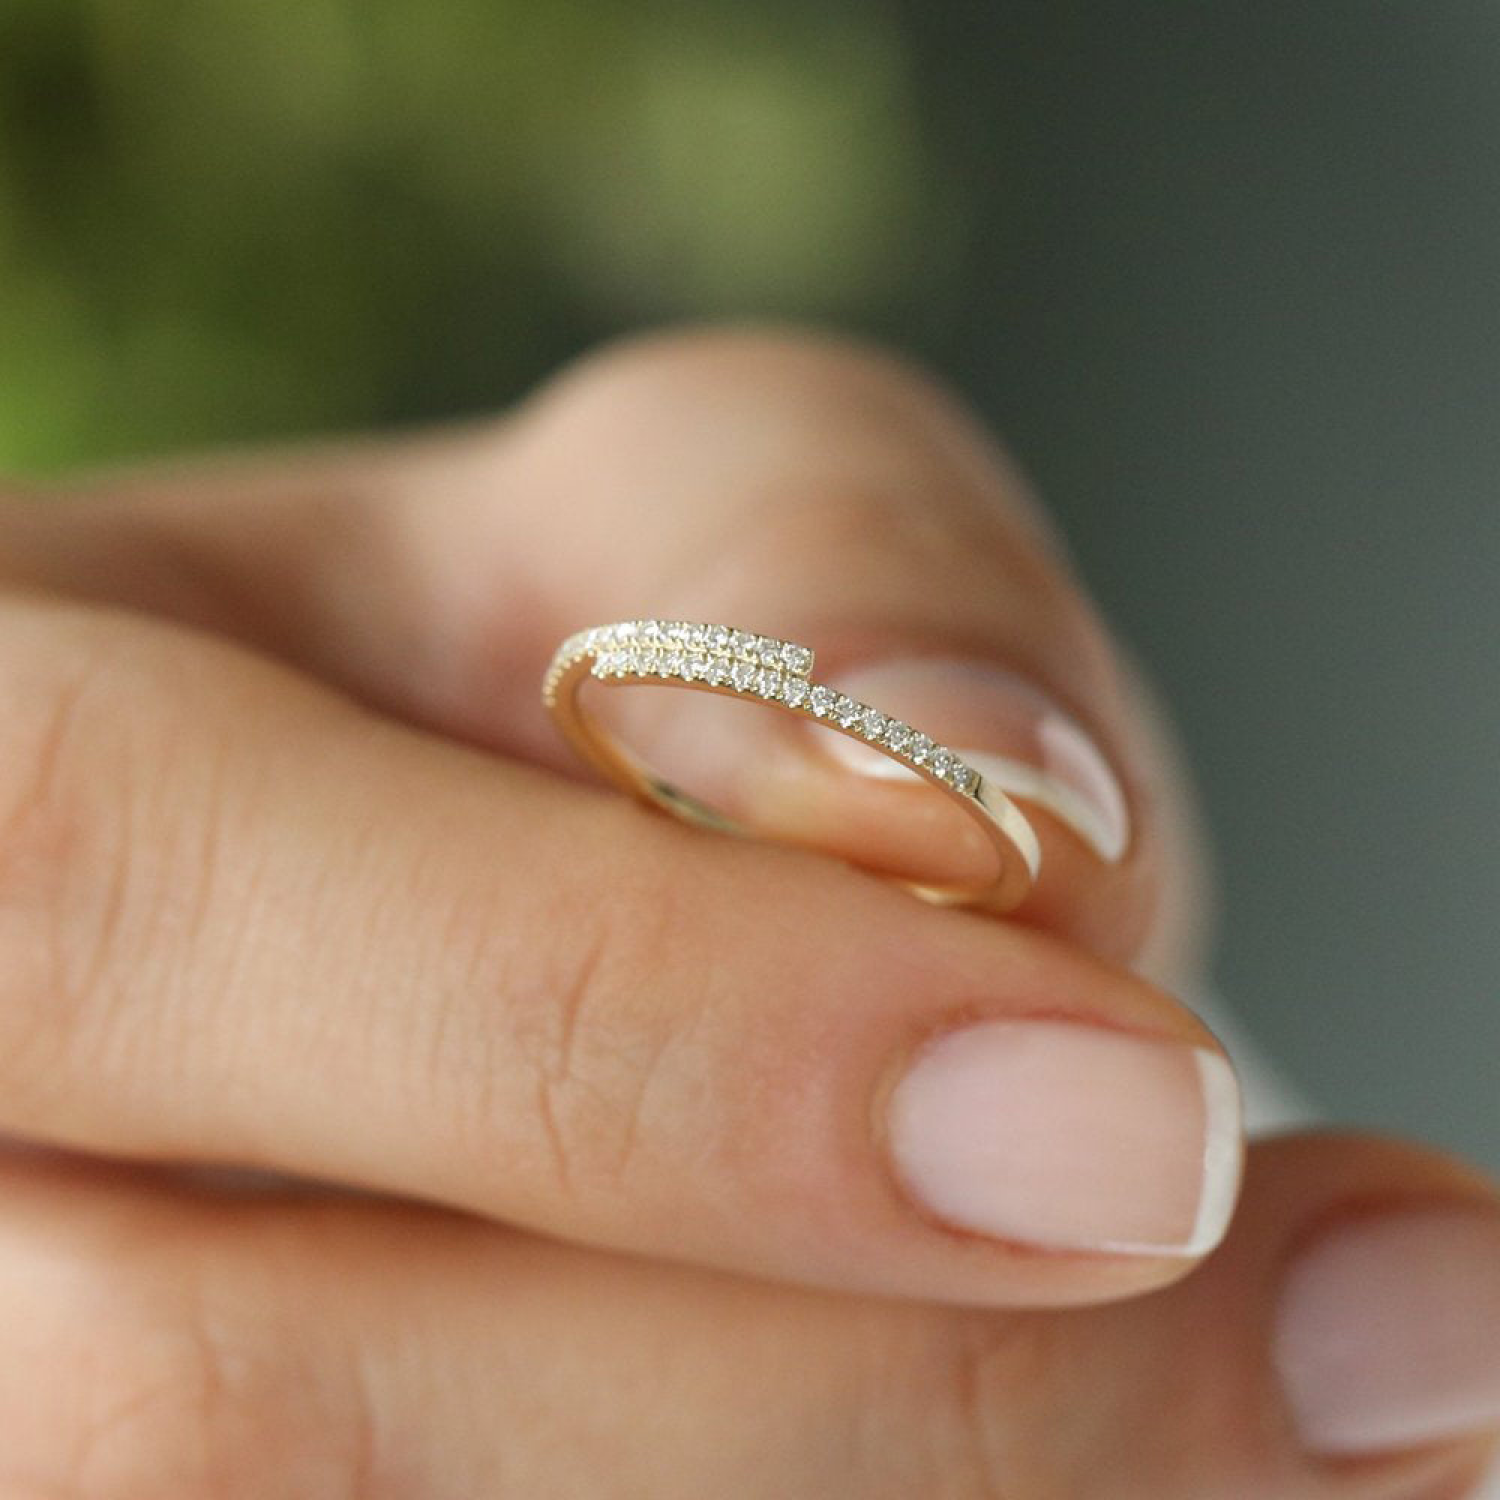 Warped Diamond Ring 24kdiamond